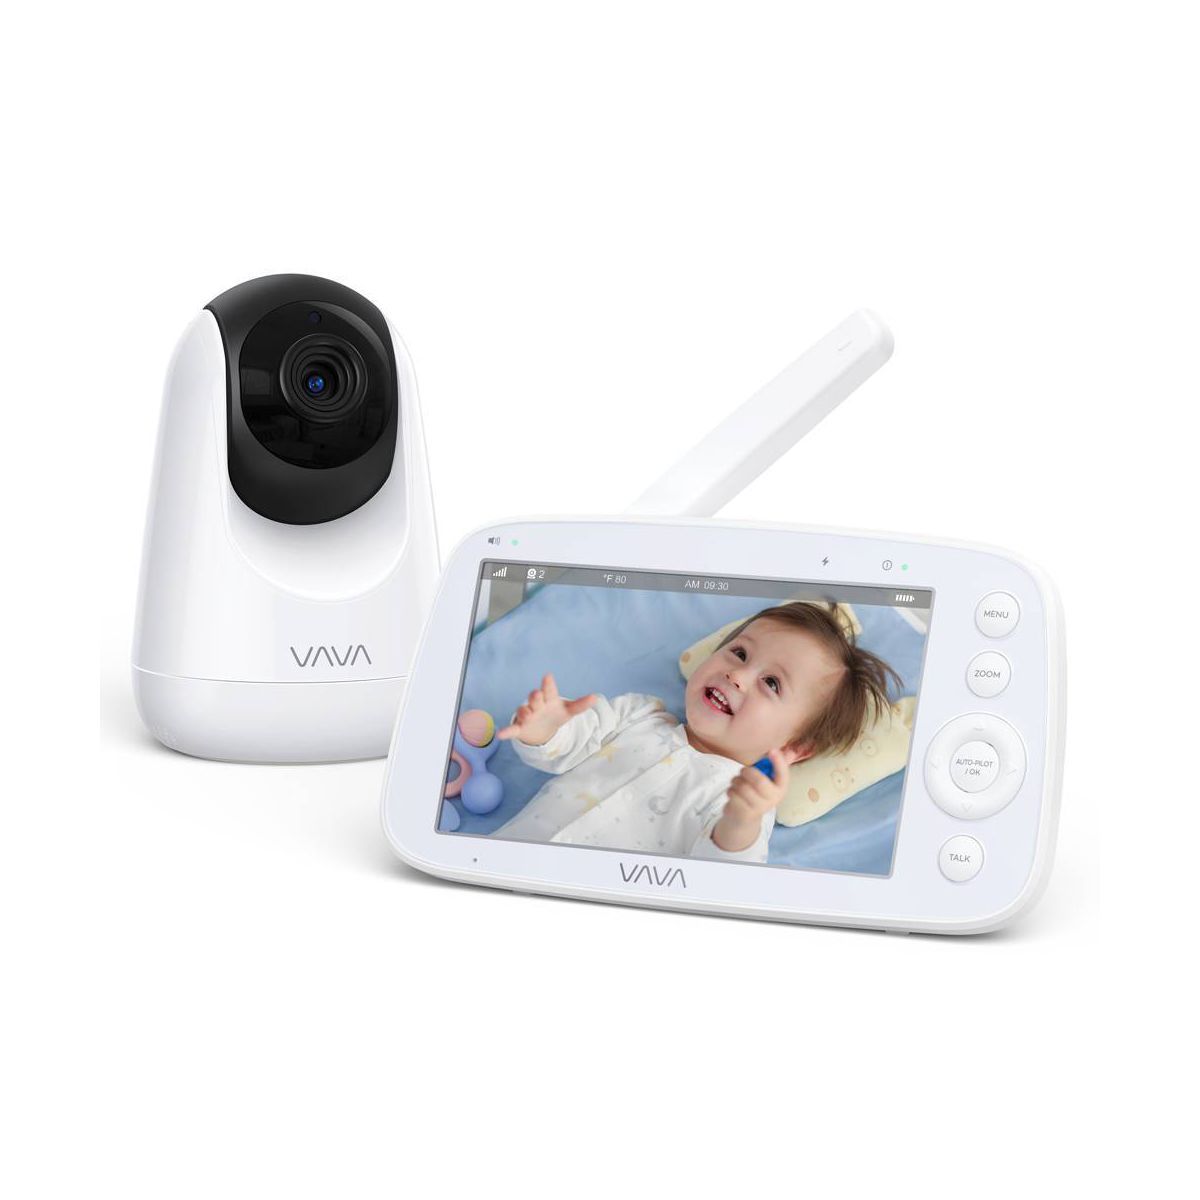 VAVA 720P 5" Baby Monitor | Target